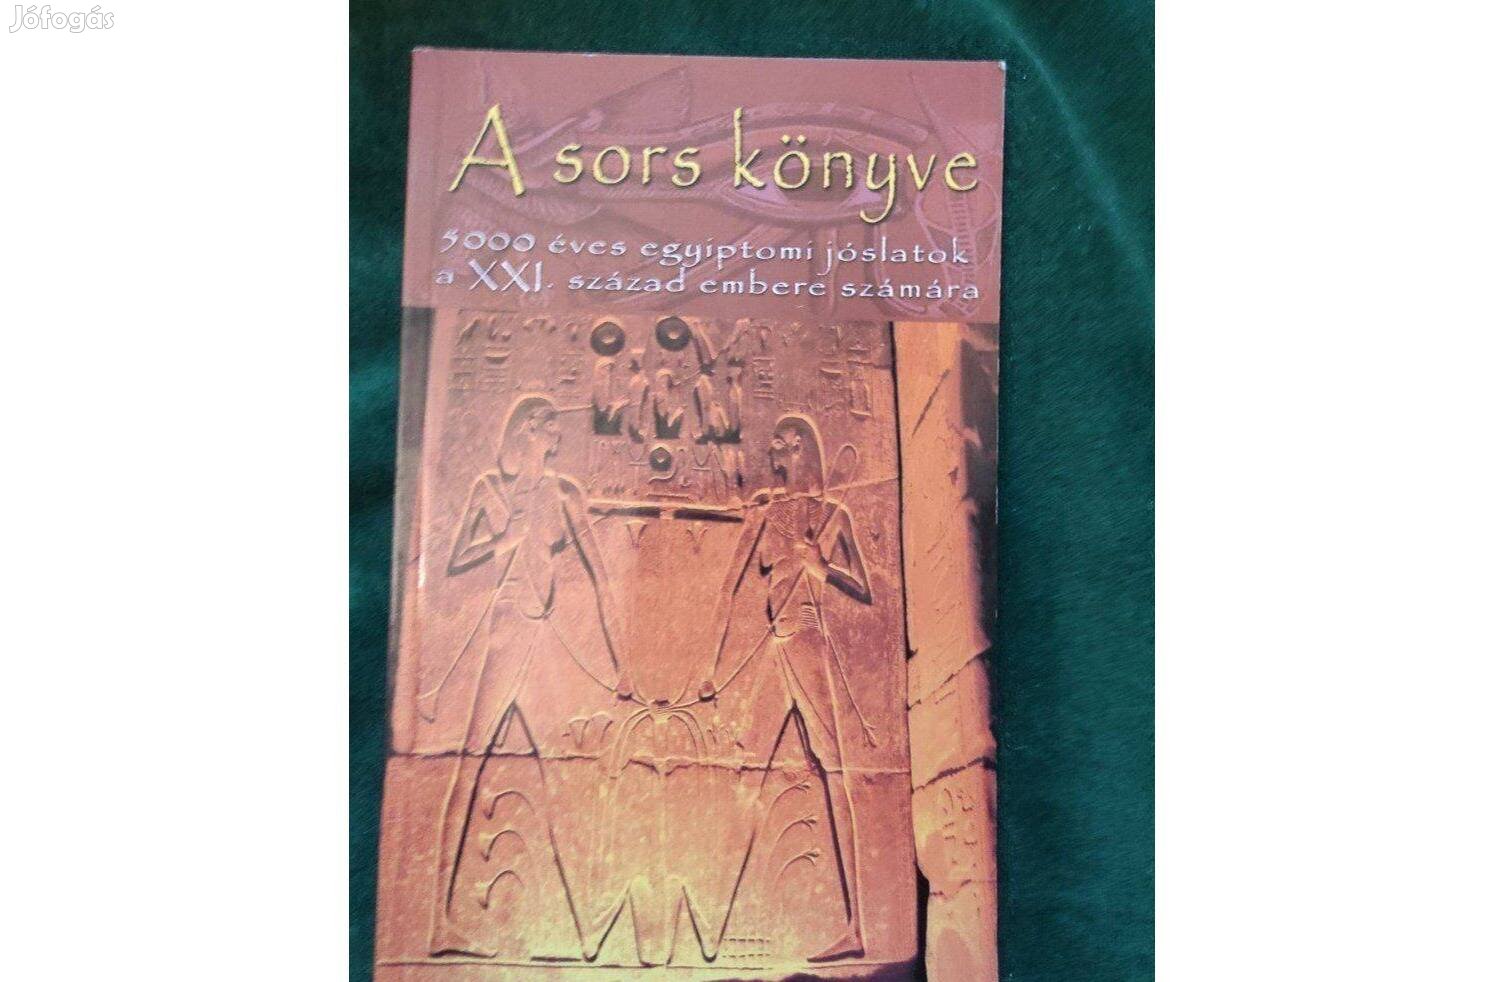 A sors könyve, 5000 éves egyiptomi jóslatok